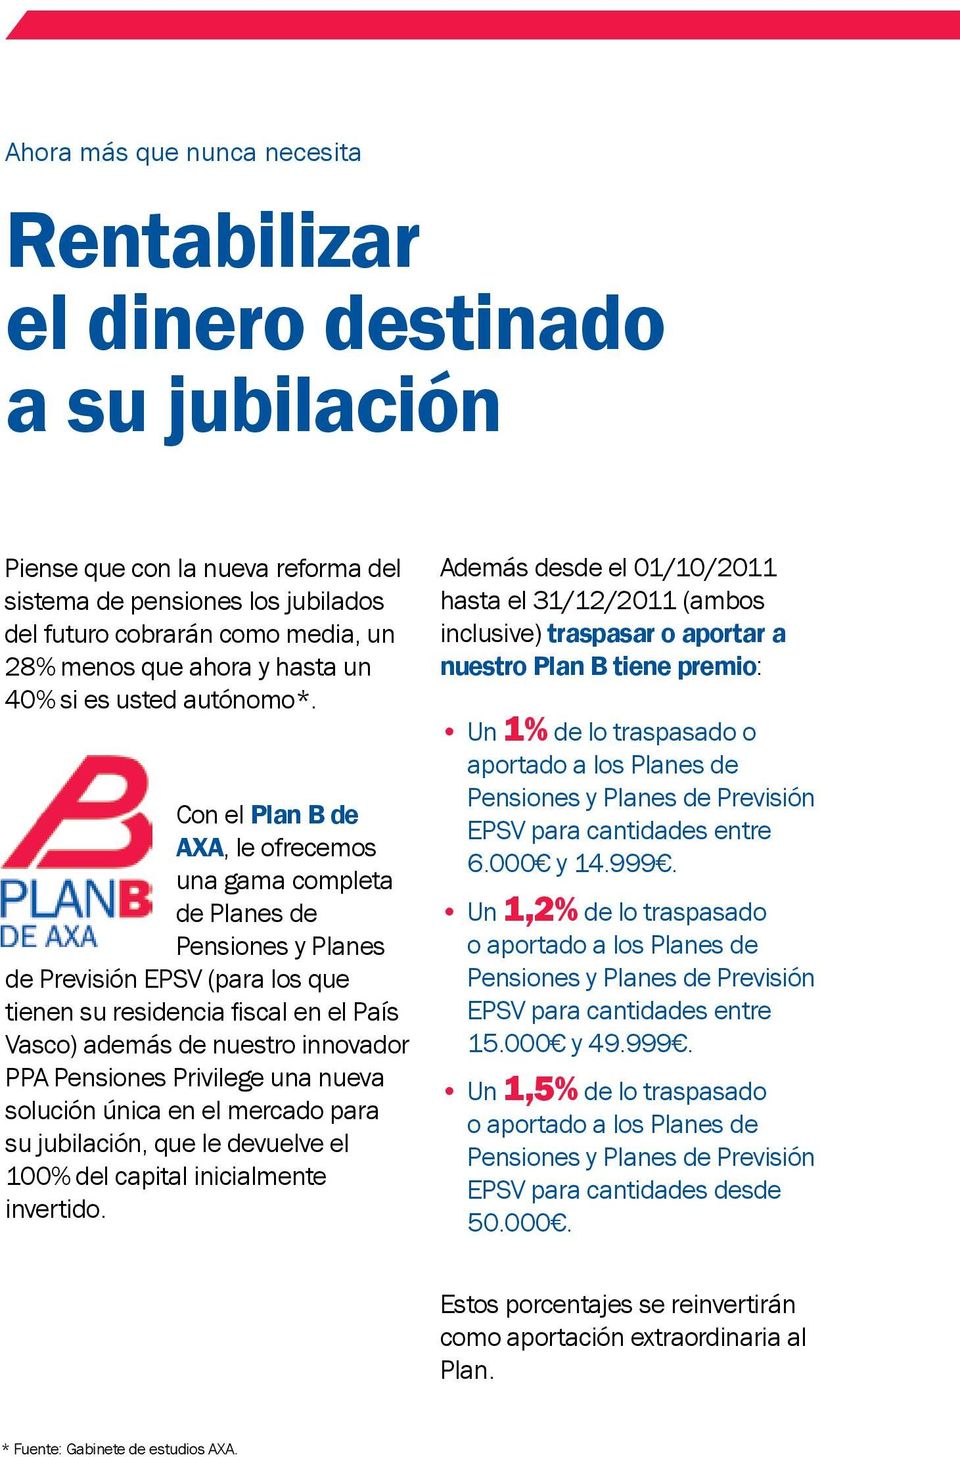 Con el Plan B de AXA, le ofrecemos una gama completa de Planes de Pensiones y Planes de Previsión EPSV (para los que tienen su residencia fiscal en el País Vasco) además de nuestro innovador PPA